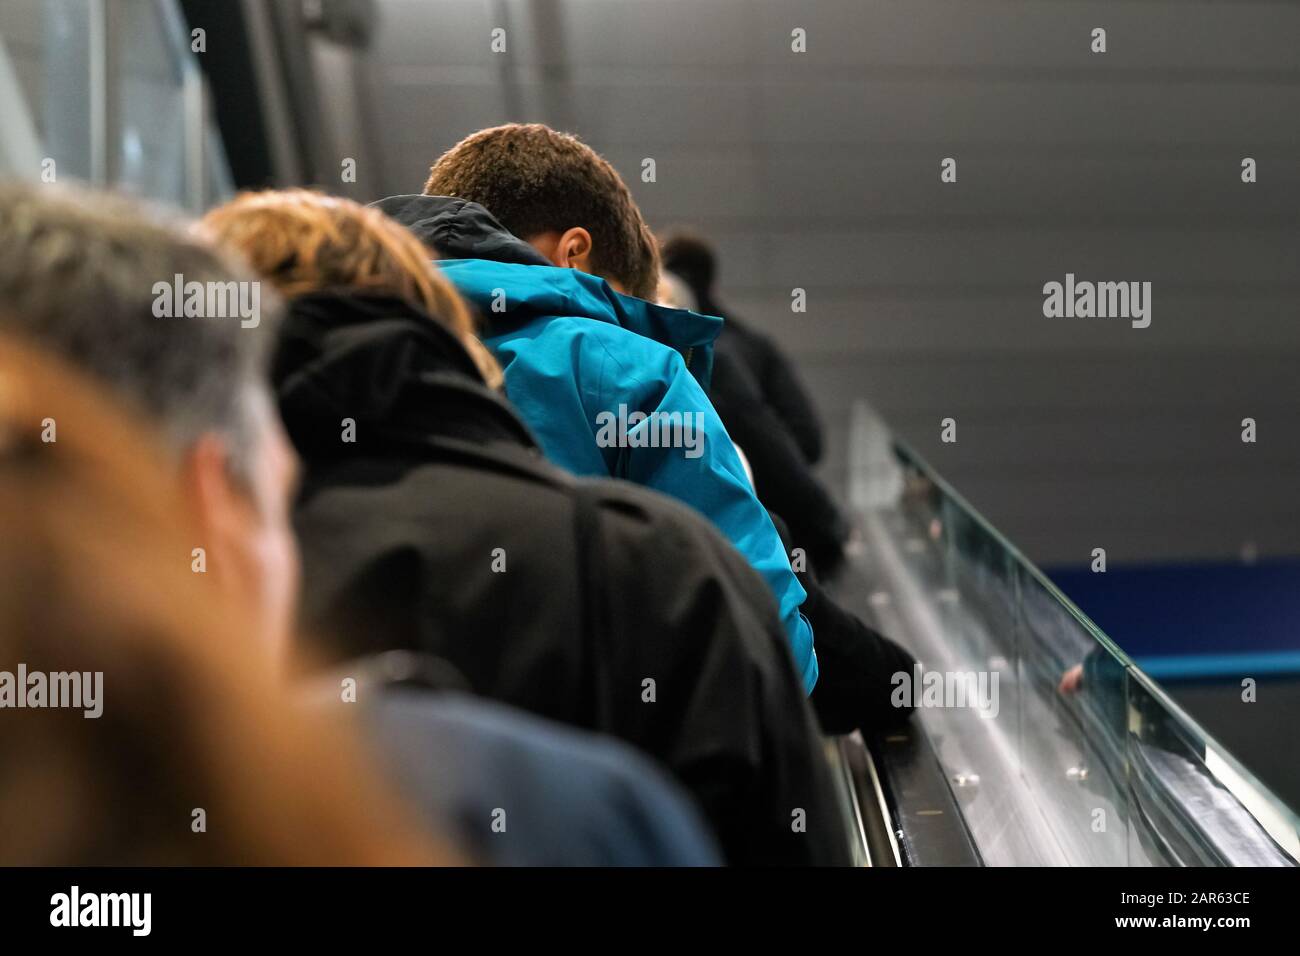 Persone anonime che si muovono su scale mobili, vista da dietro, dettaglio sulla loro testa - concetto di trasporto Foto Stock